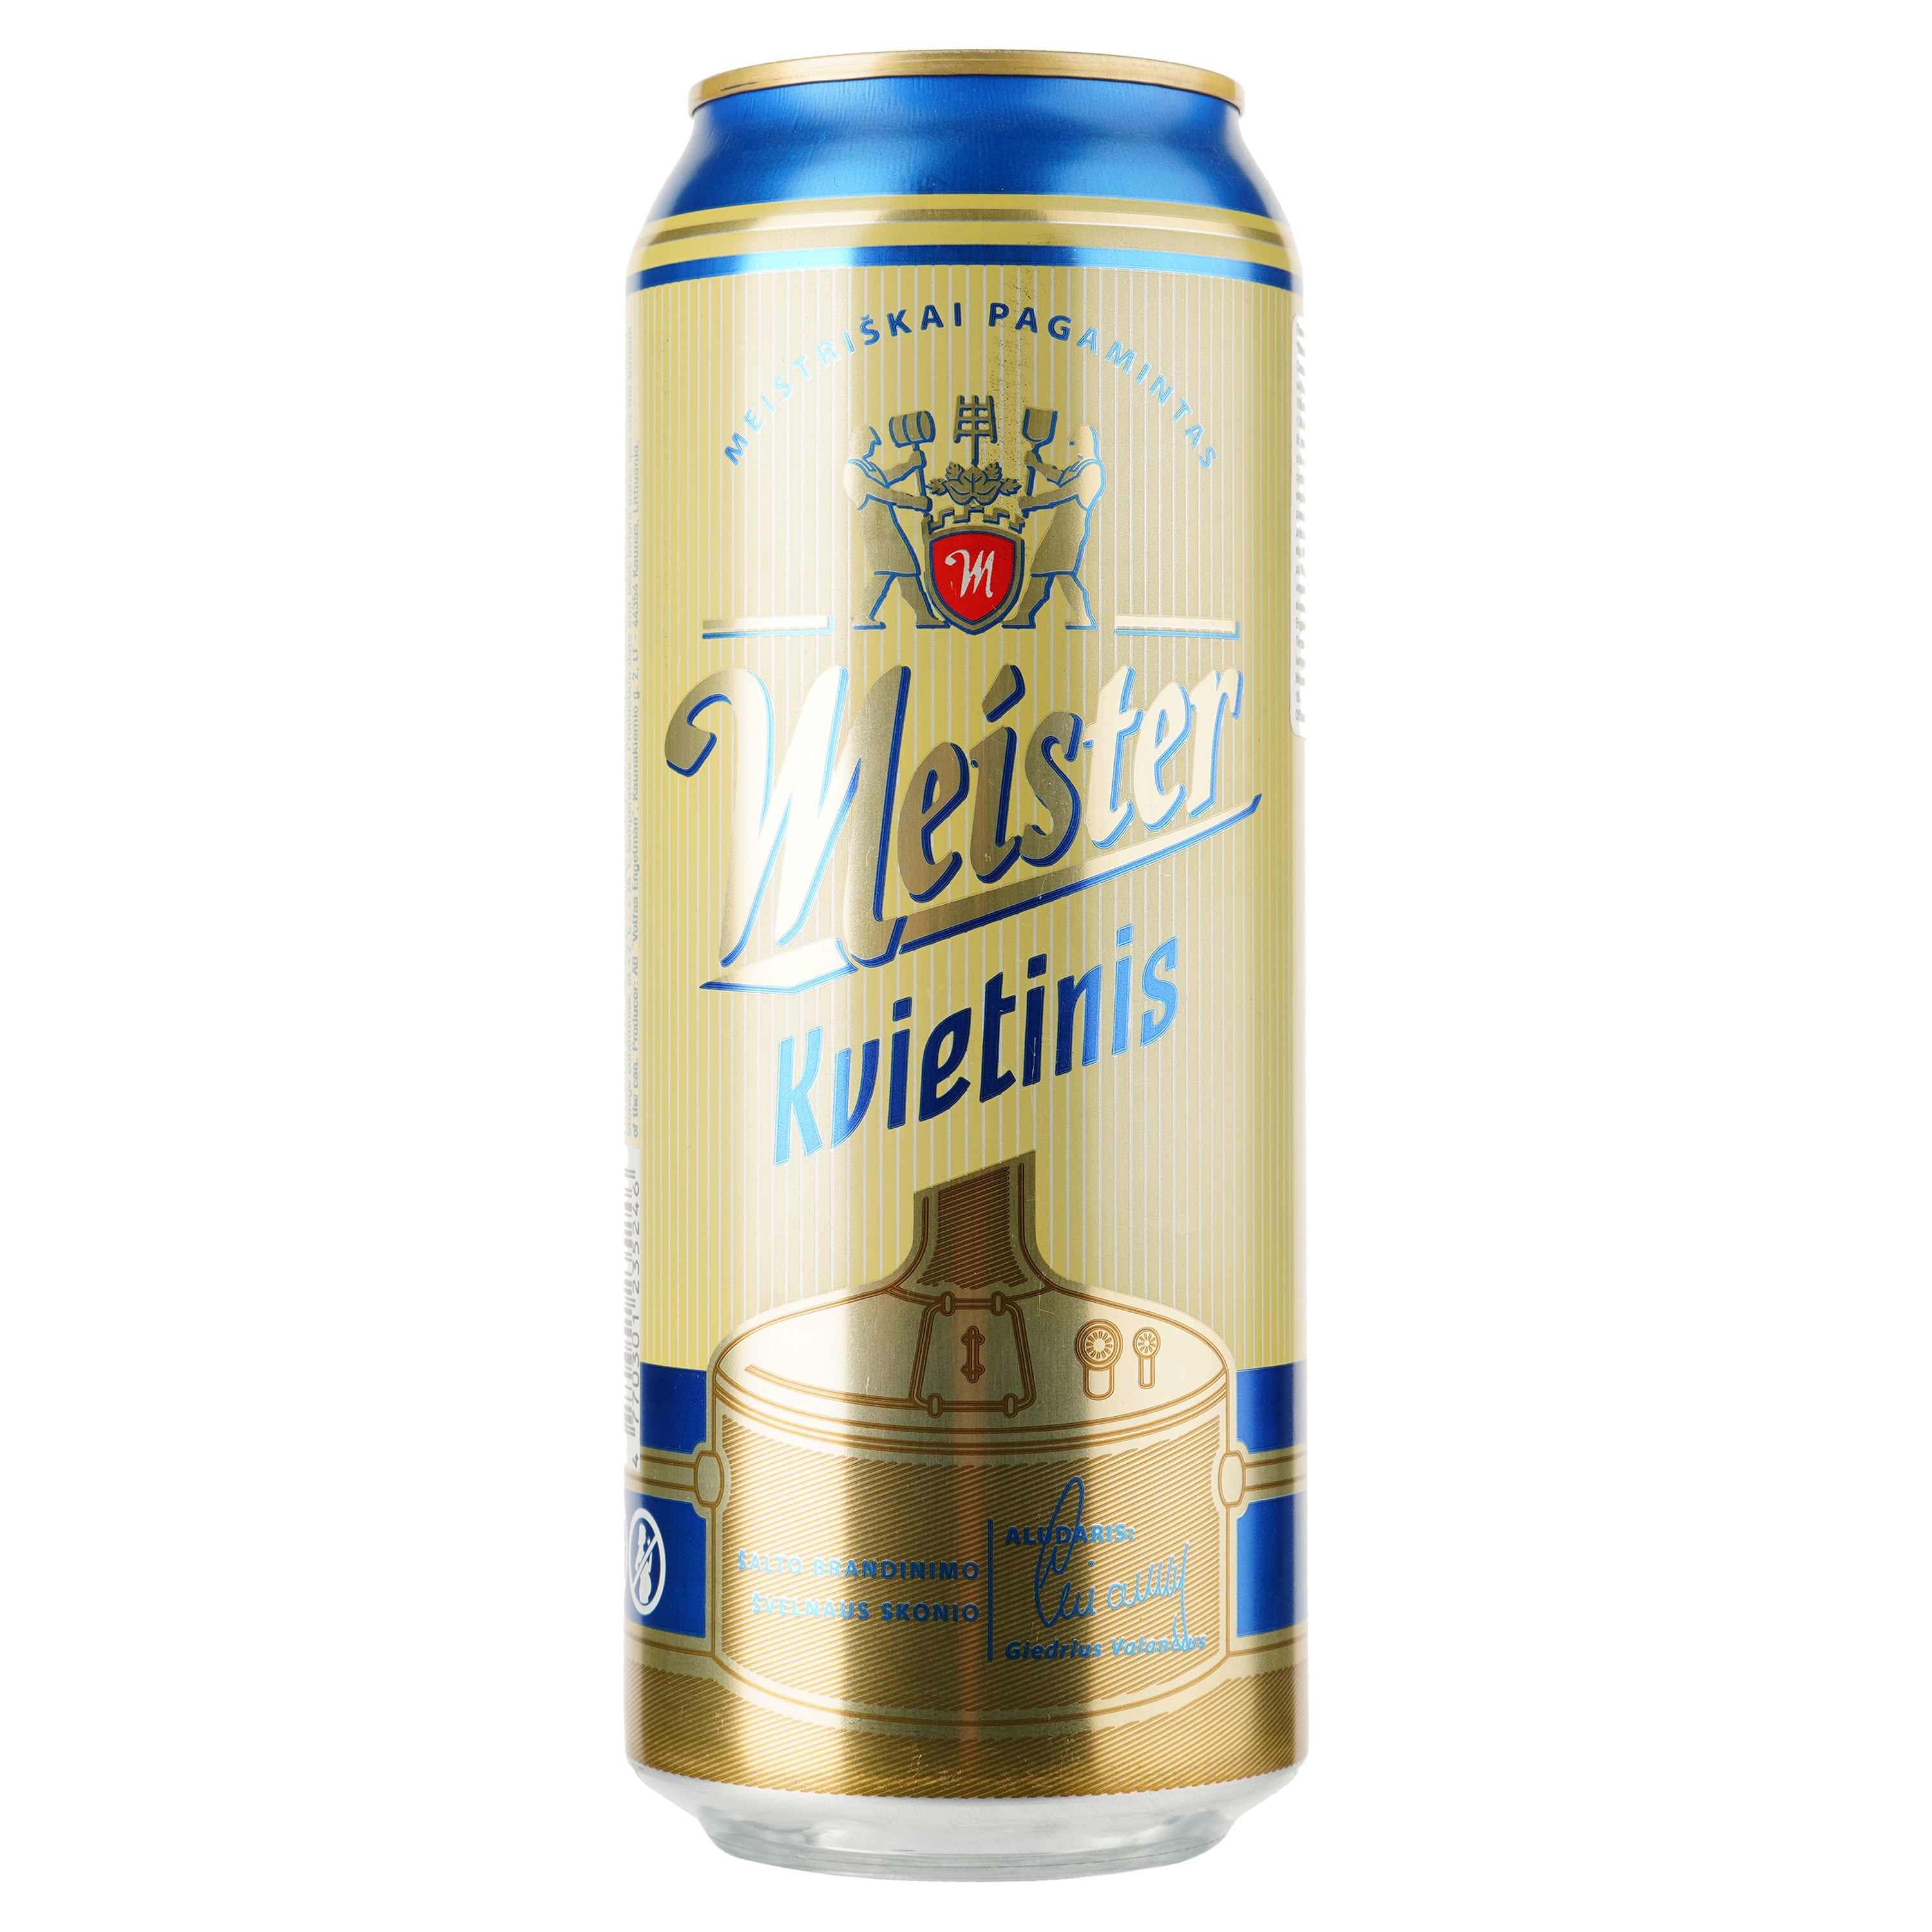 Пиво Meister Weissbier светлое, 5%, ж/б, 0.5 л - фото 1